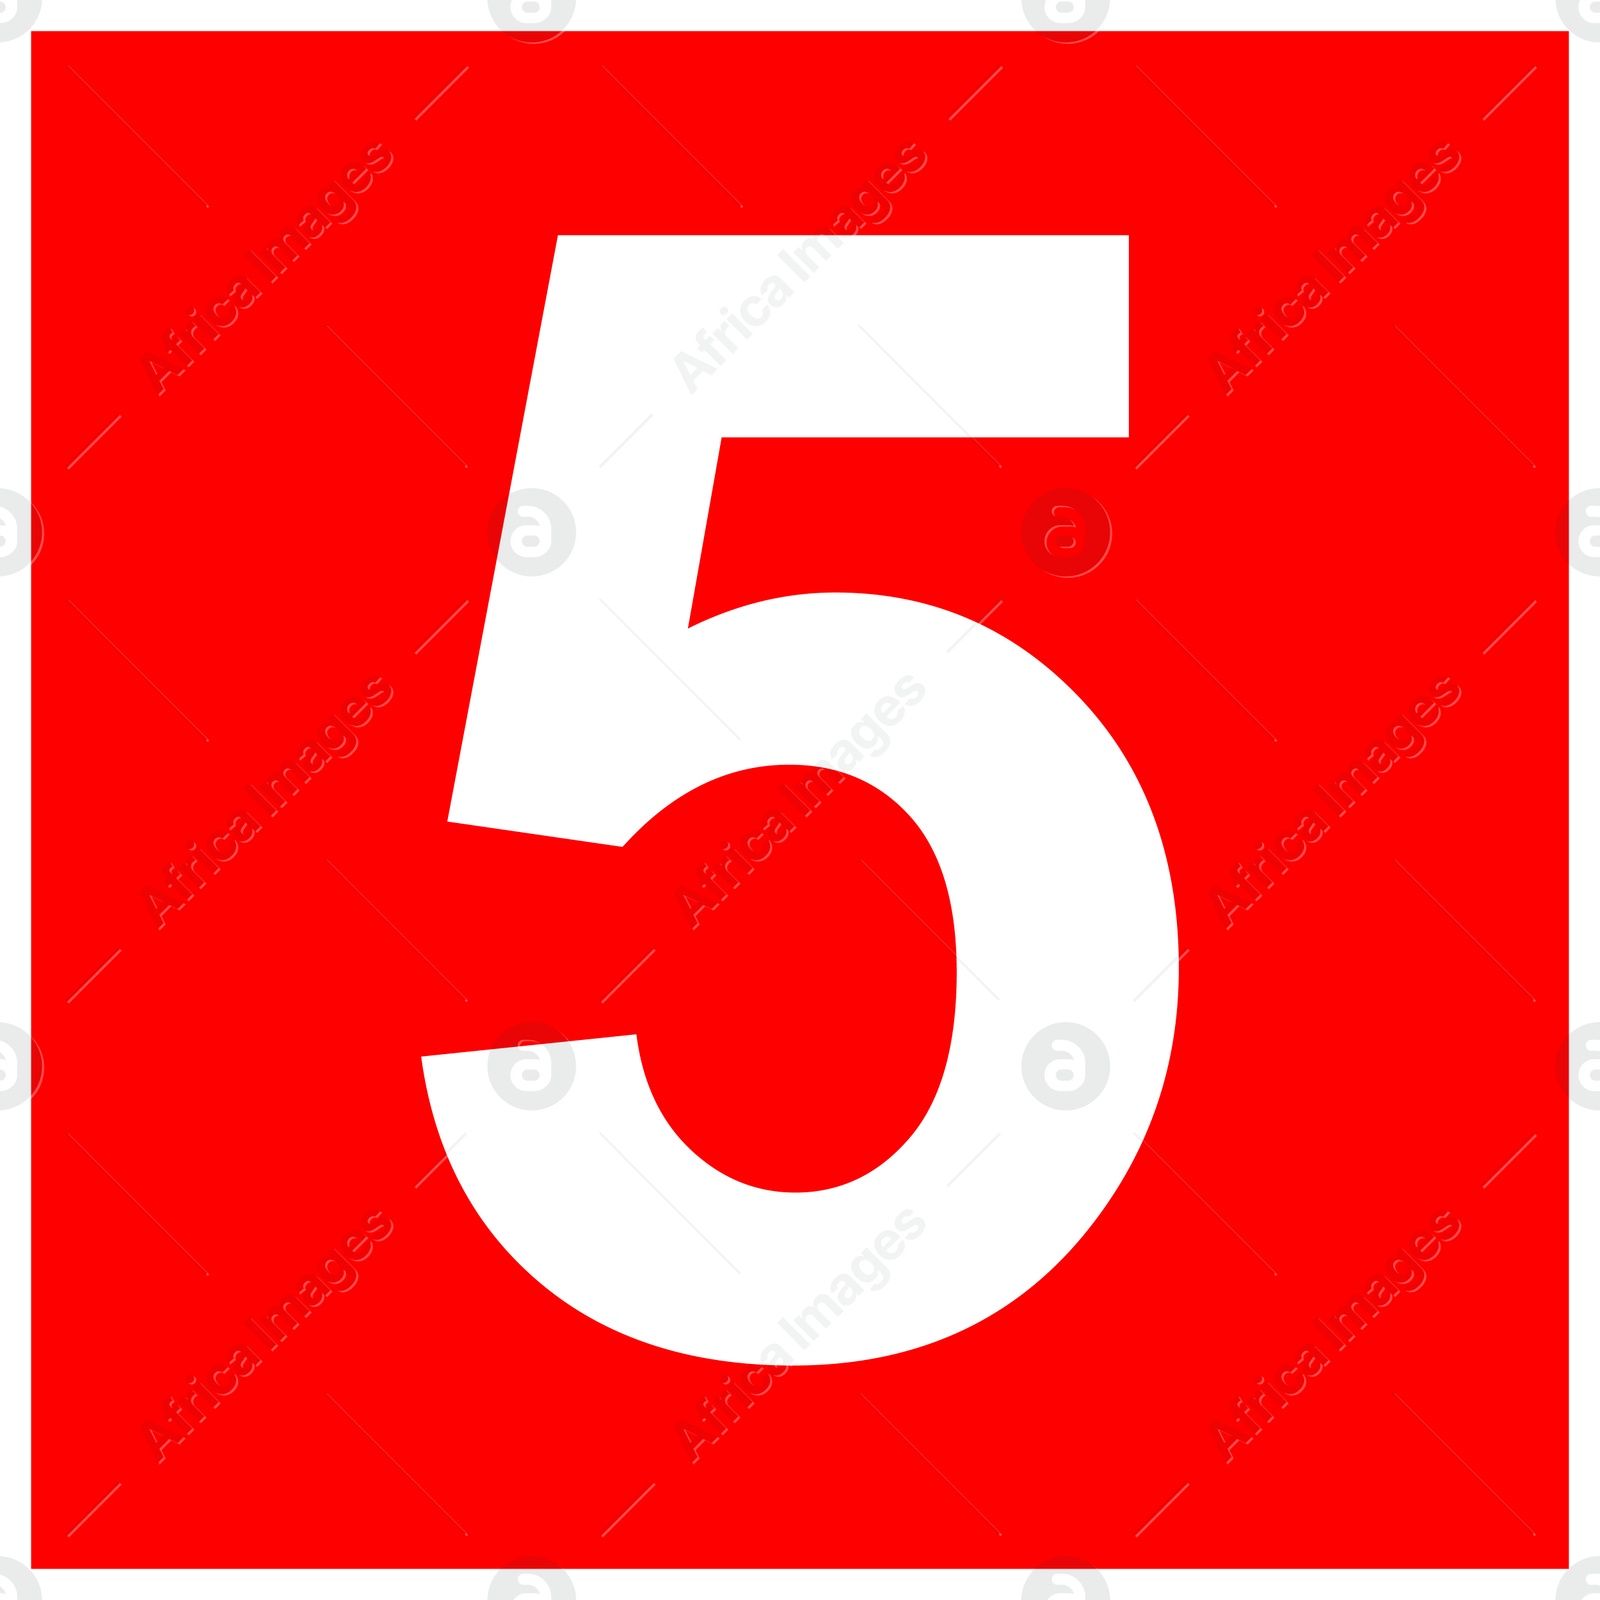 Image of International Maritime Organization (IMO) sign, illustration. Number "5" 